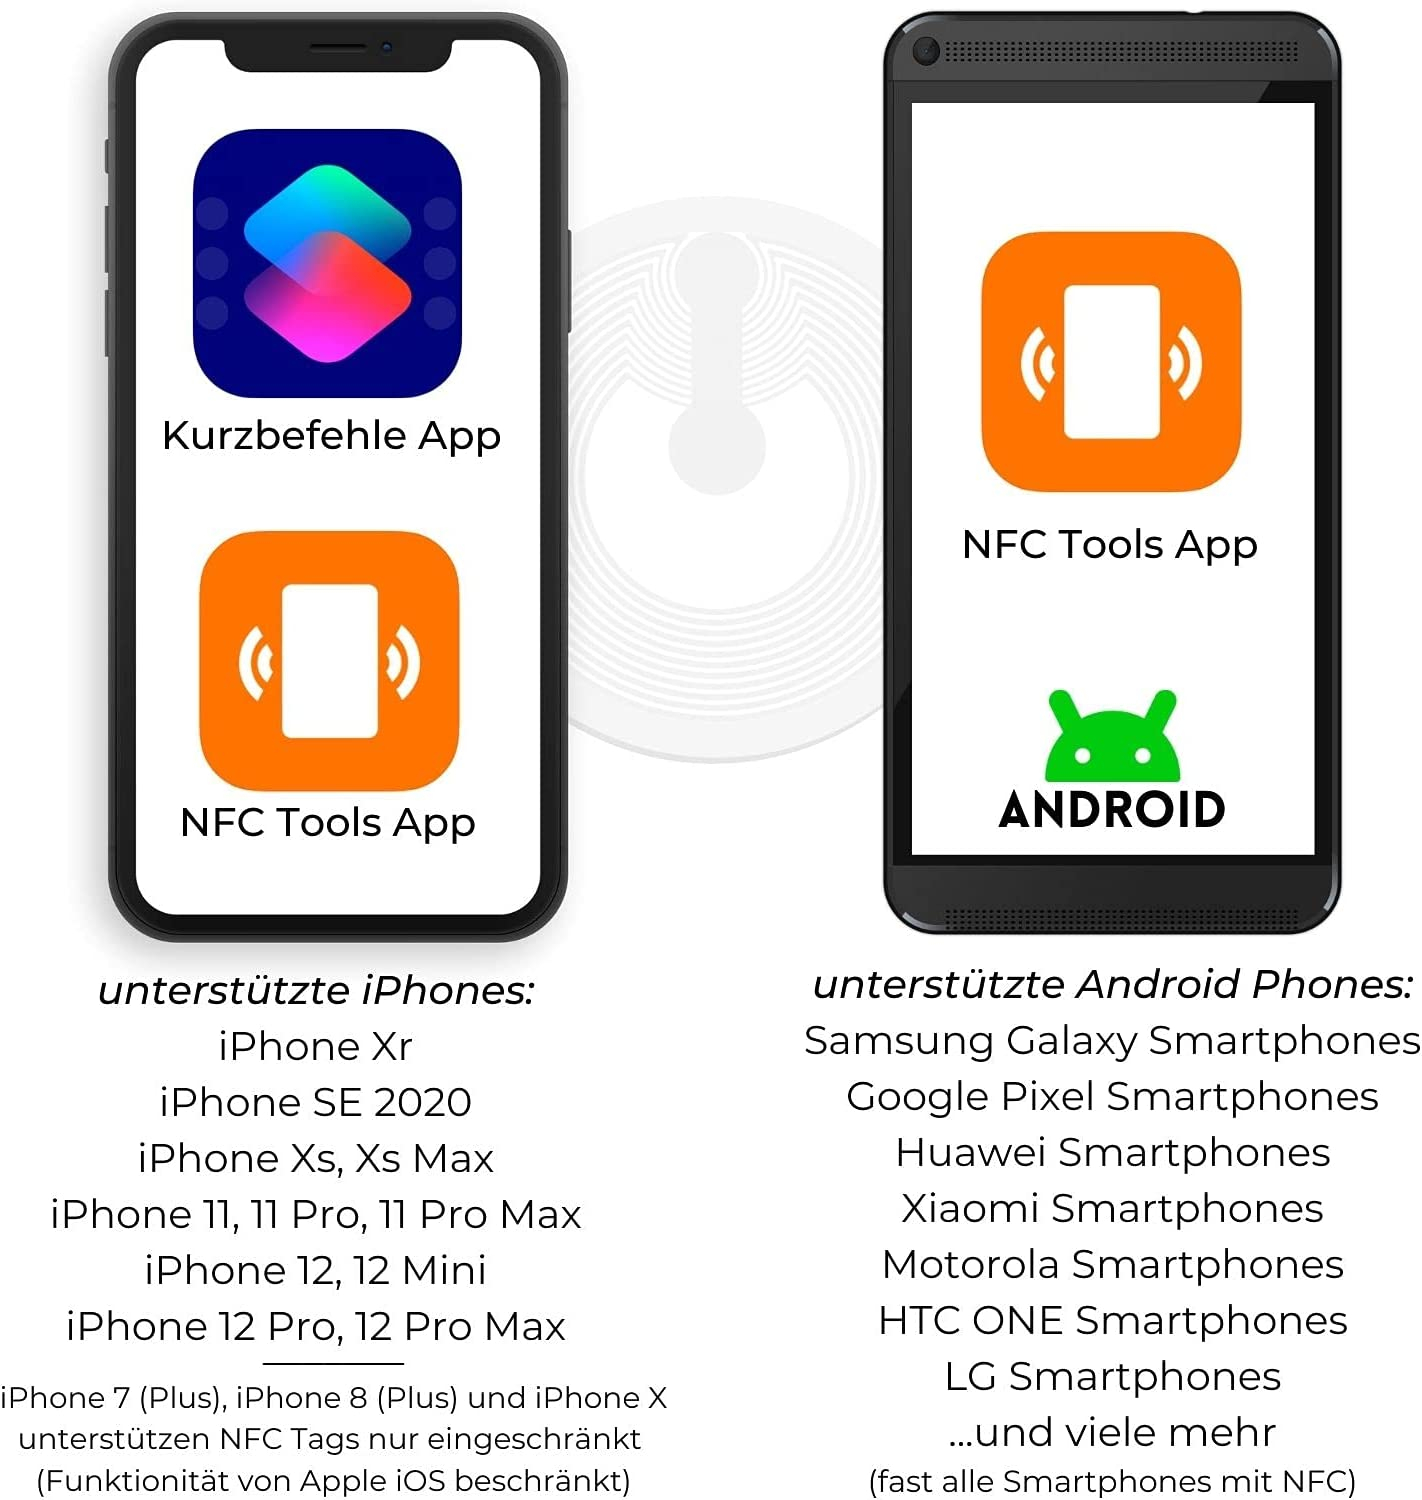 NFC Tag Aufkleber,NFC Tag,NFC Sticker,NFC Tags,RFID NFC Tags/Aufkleber  25mm,NFC Tag Sticker,Aufkleber Tags kompatibel mit Apple iPhone iOS  Kurzbefehle